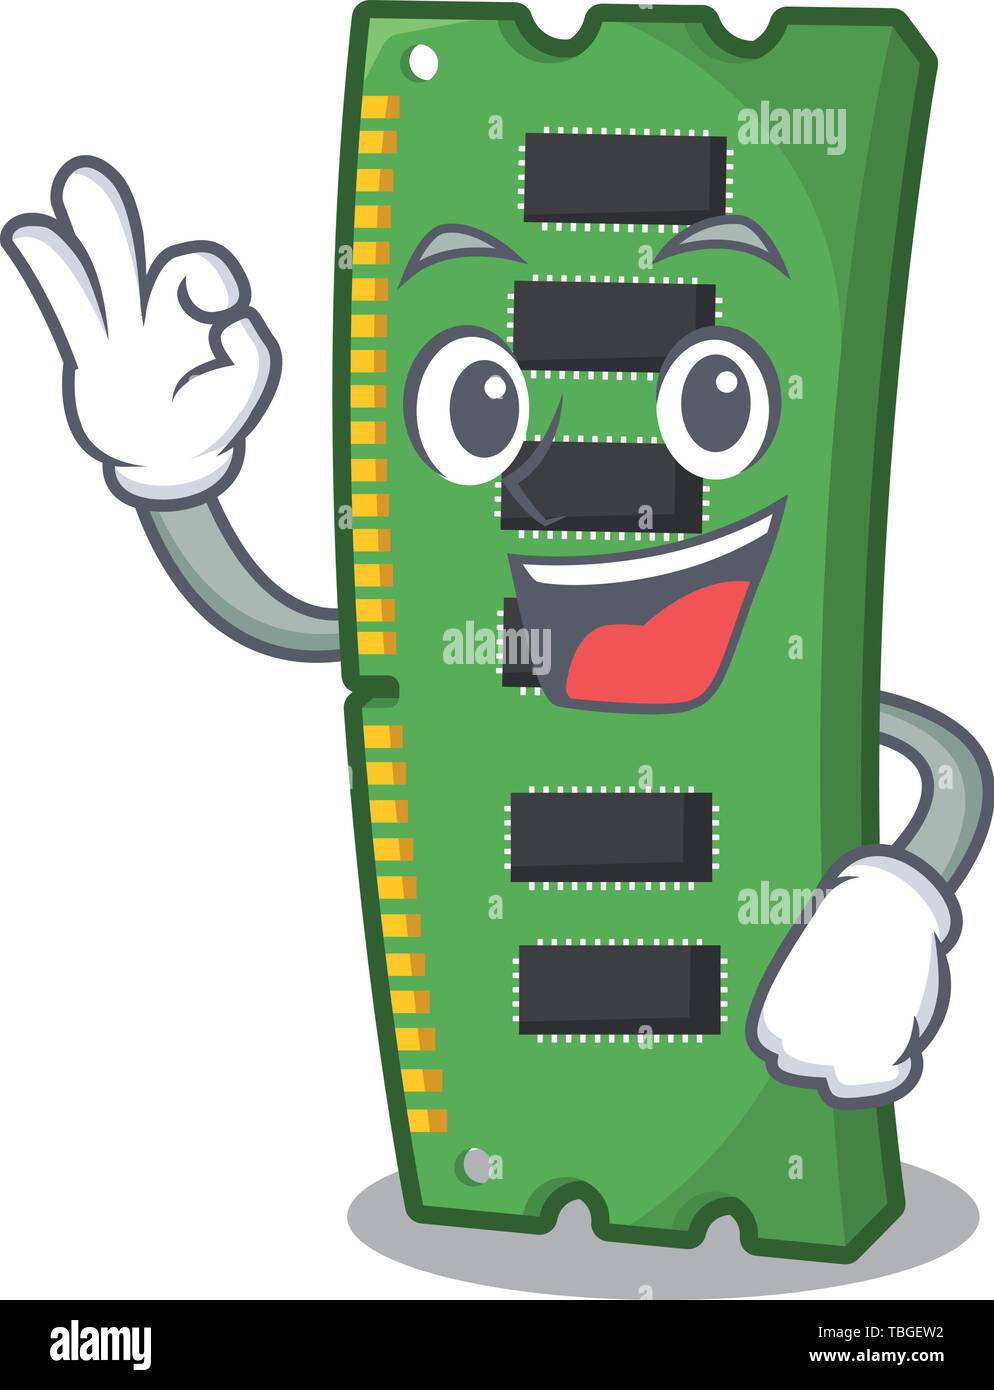 Okay RAM memory card the mascot shape Stock Vector